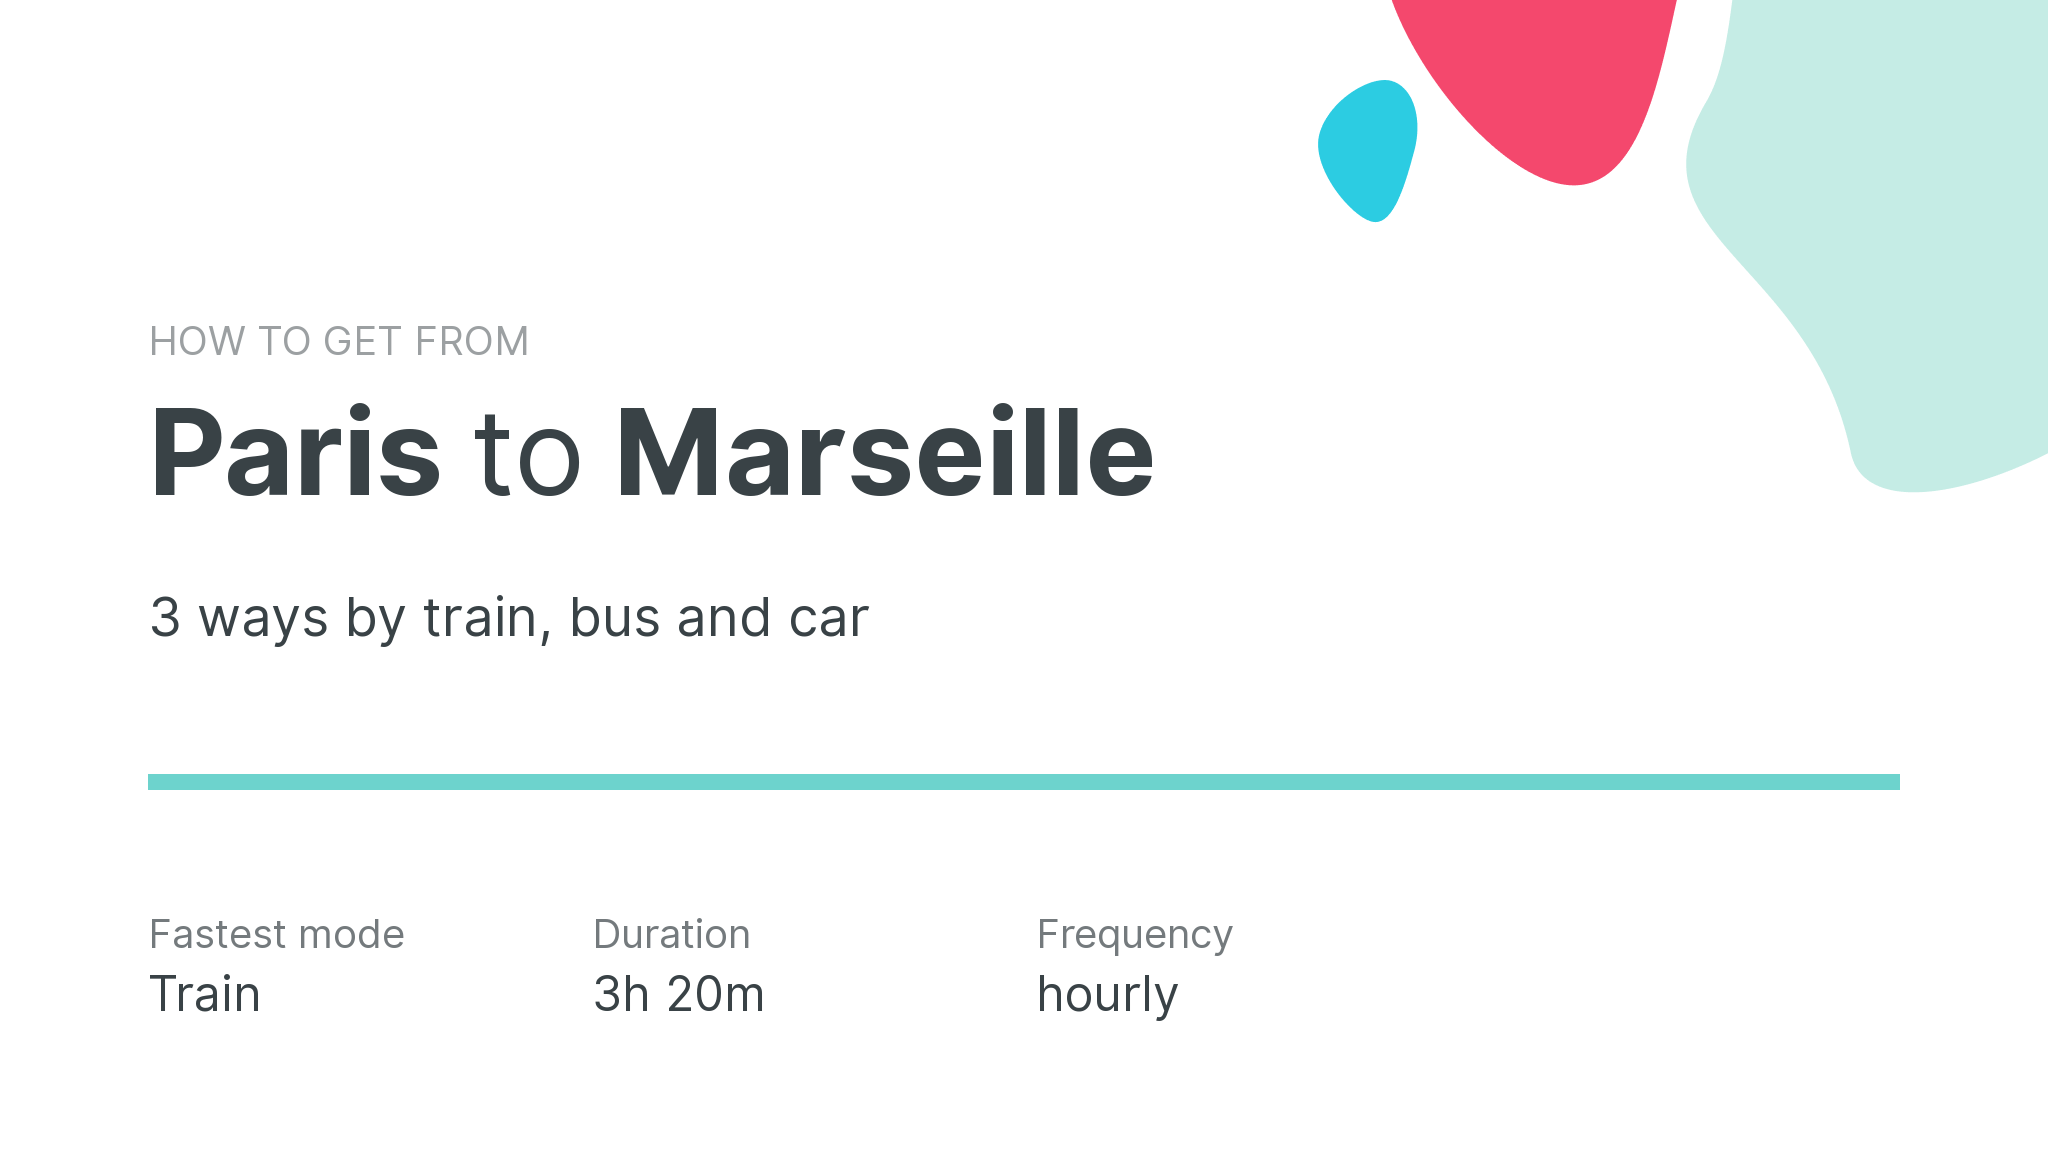 How do I get from Paris to Marseille